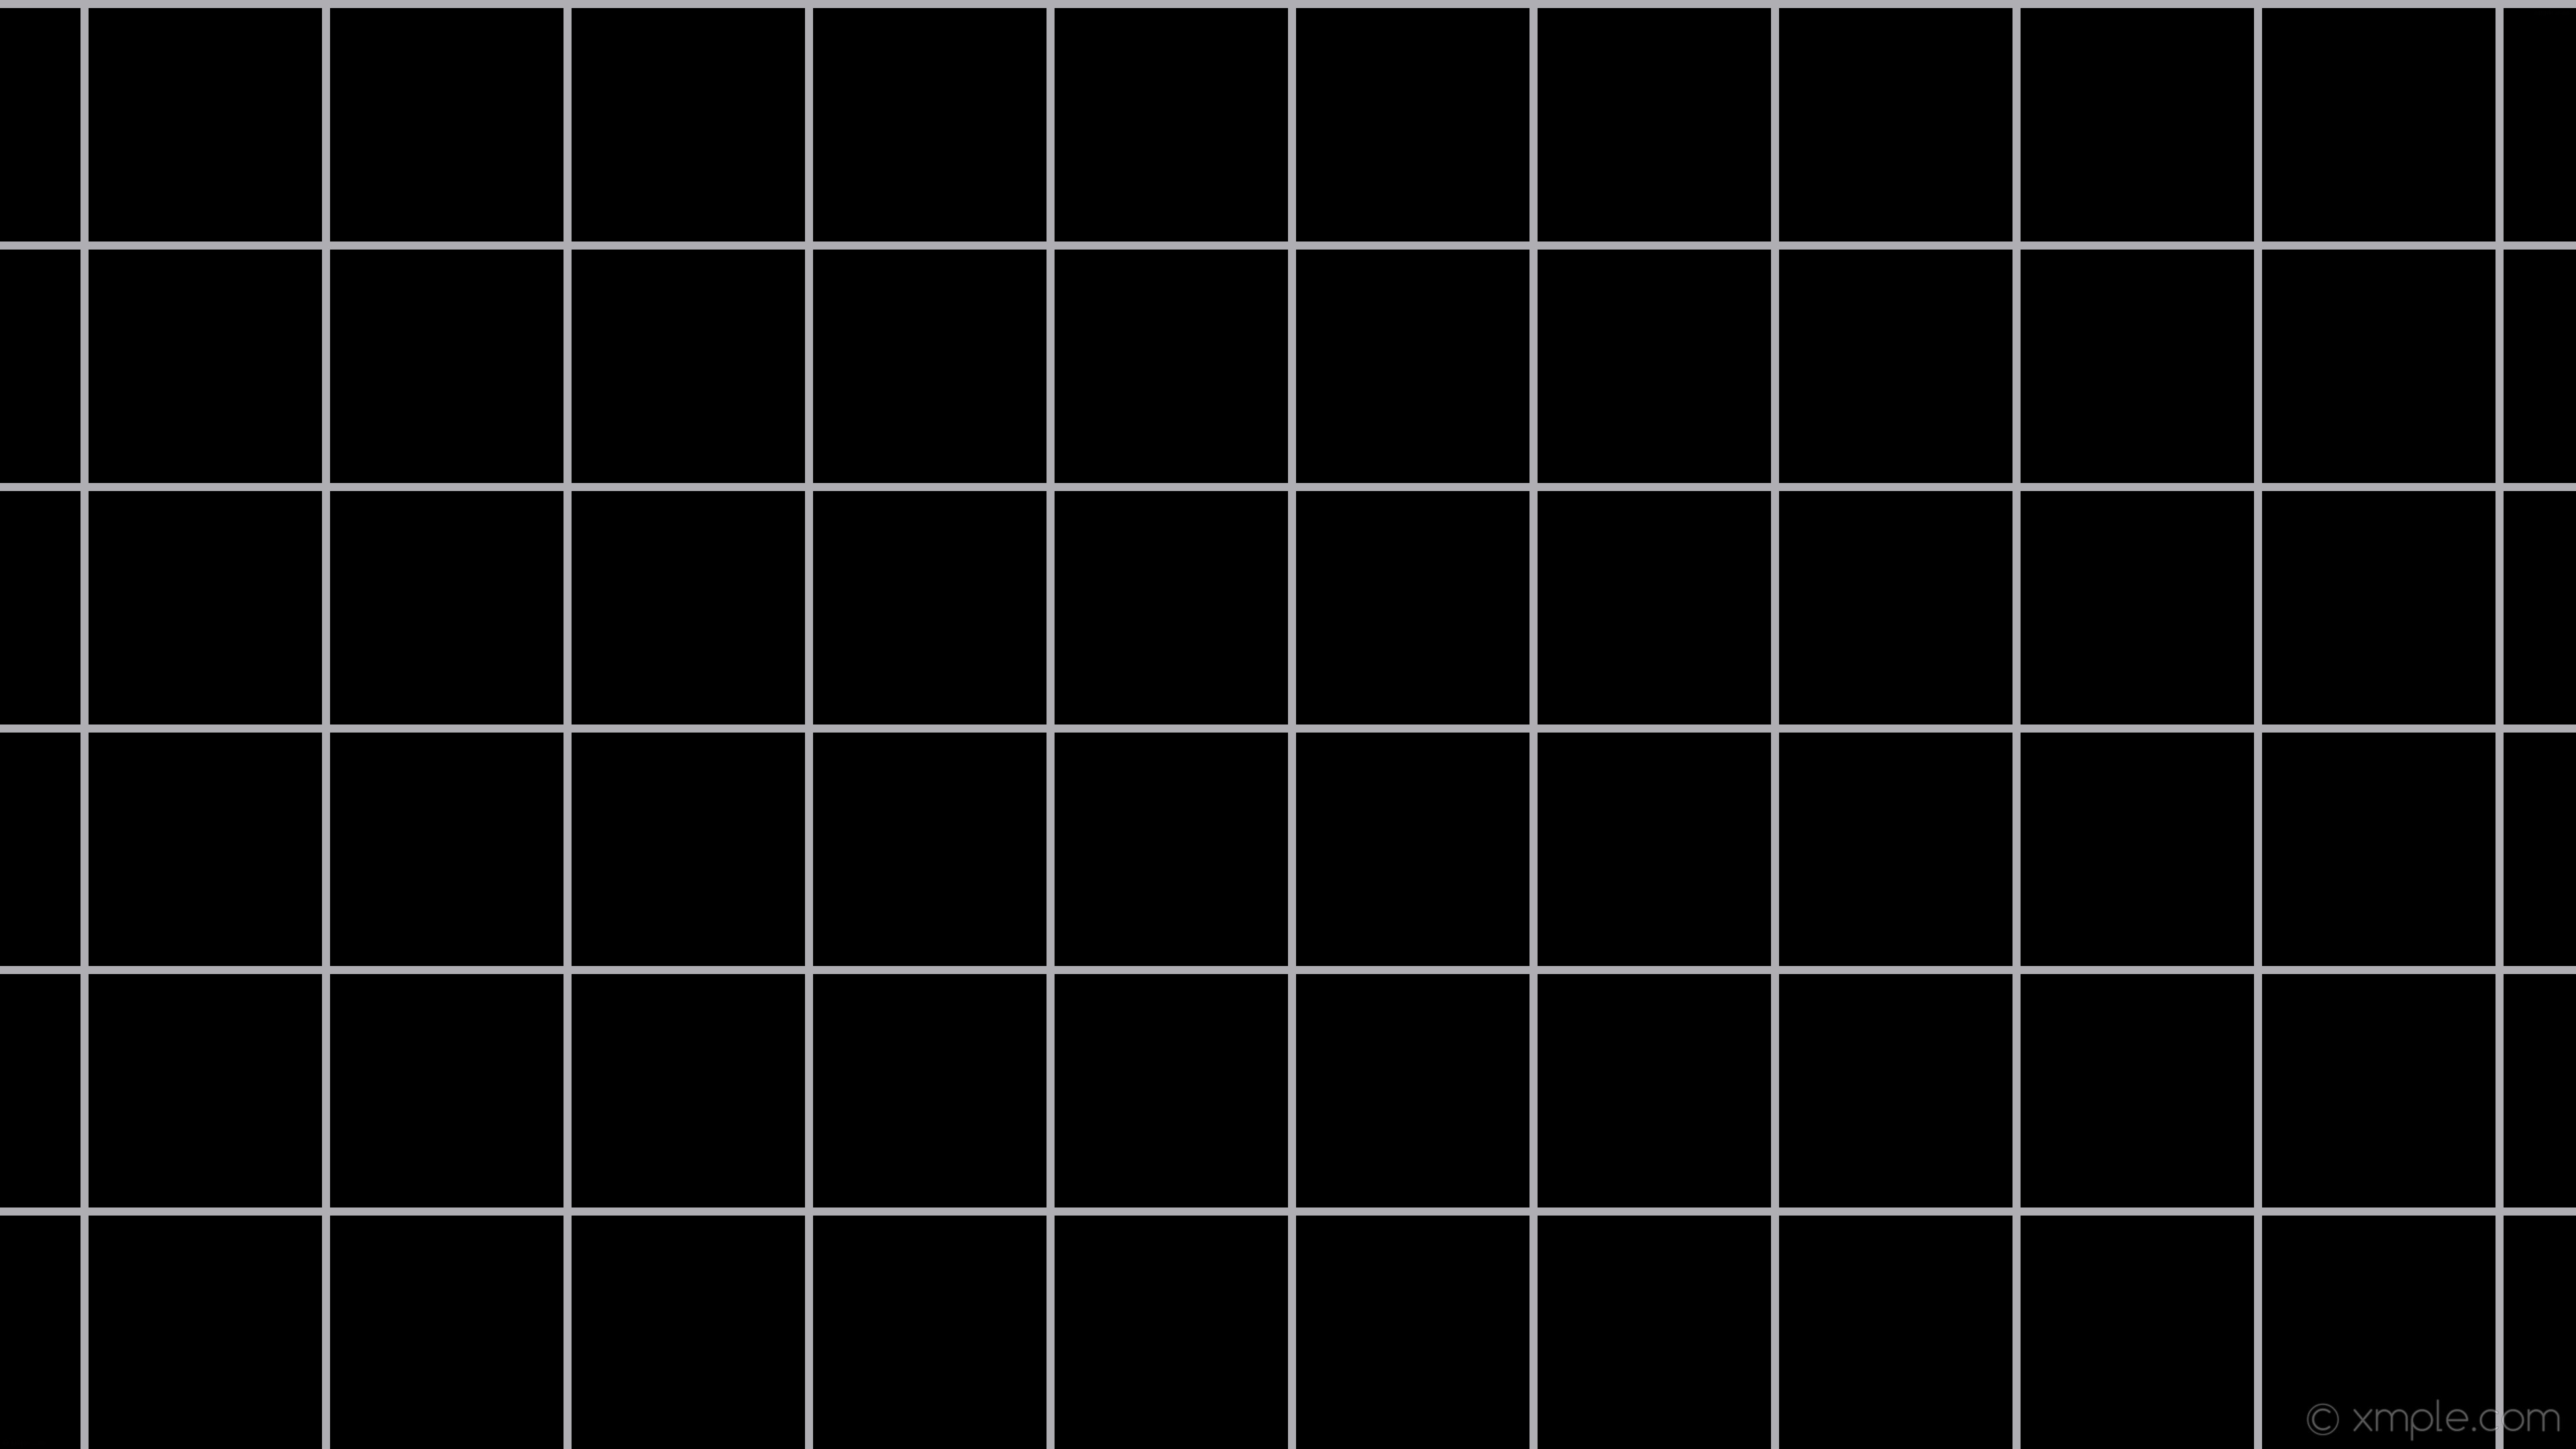 Black Grid Background Images  Free Download on Freepik